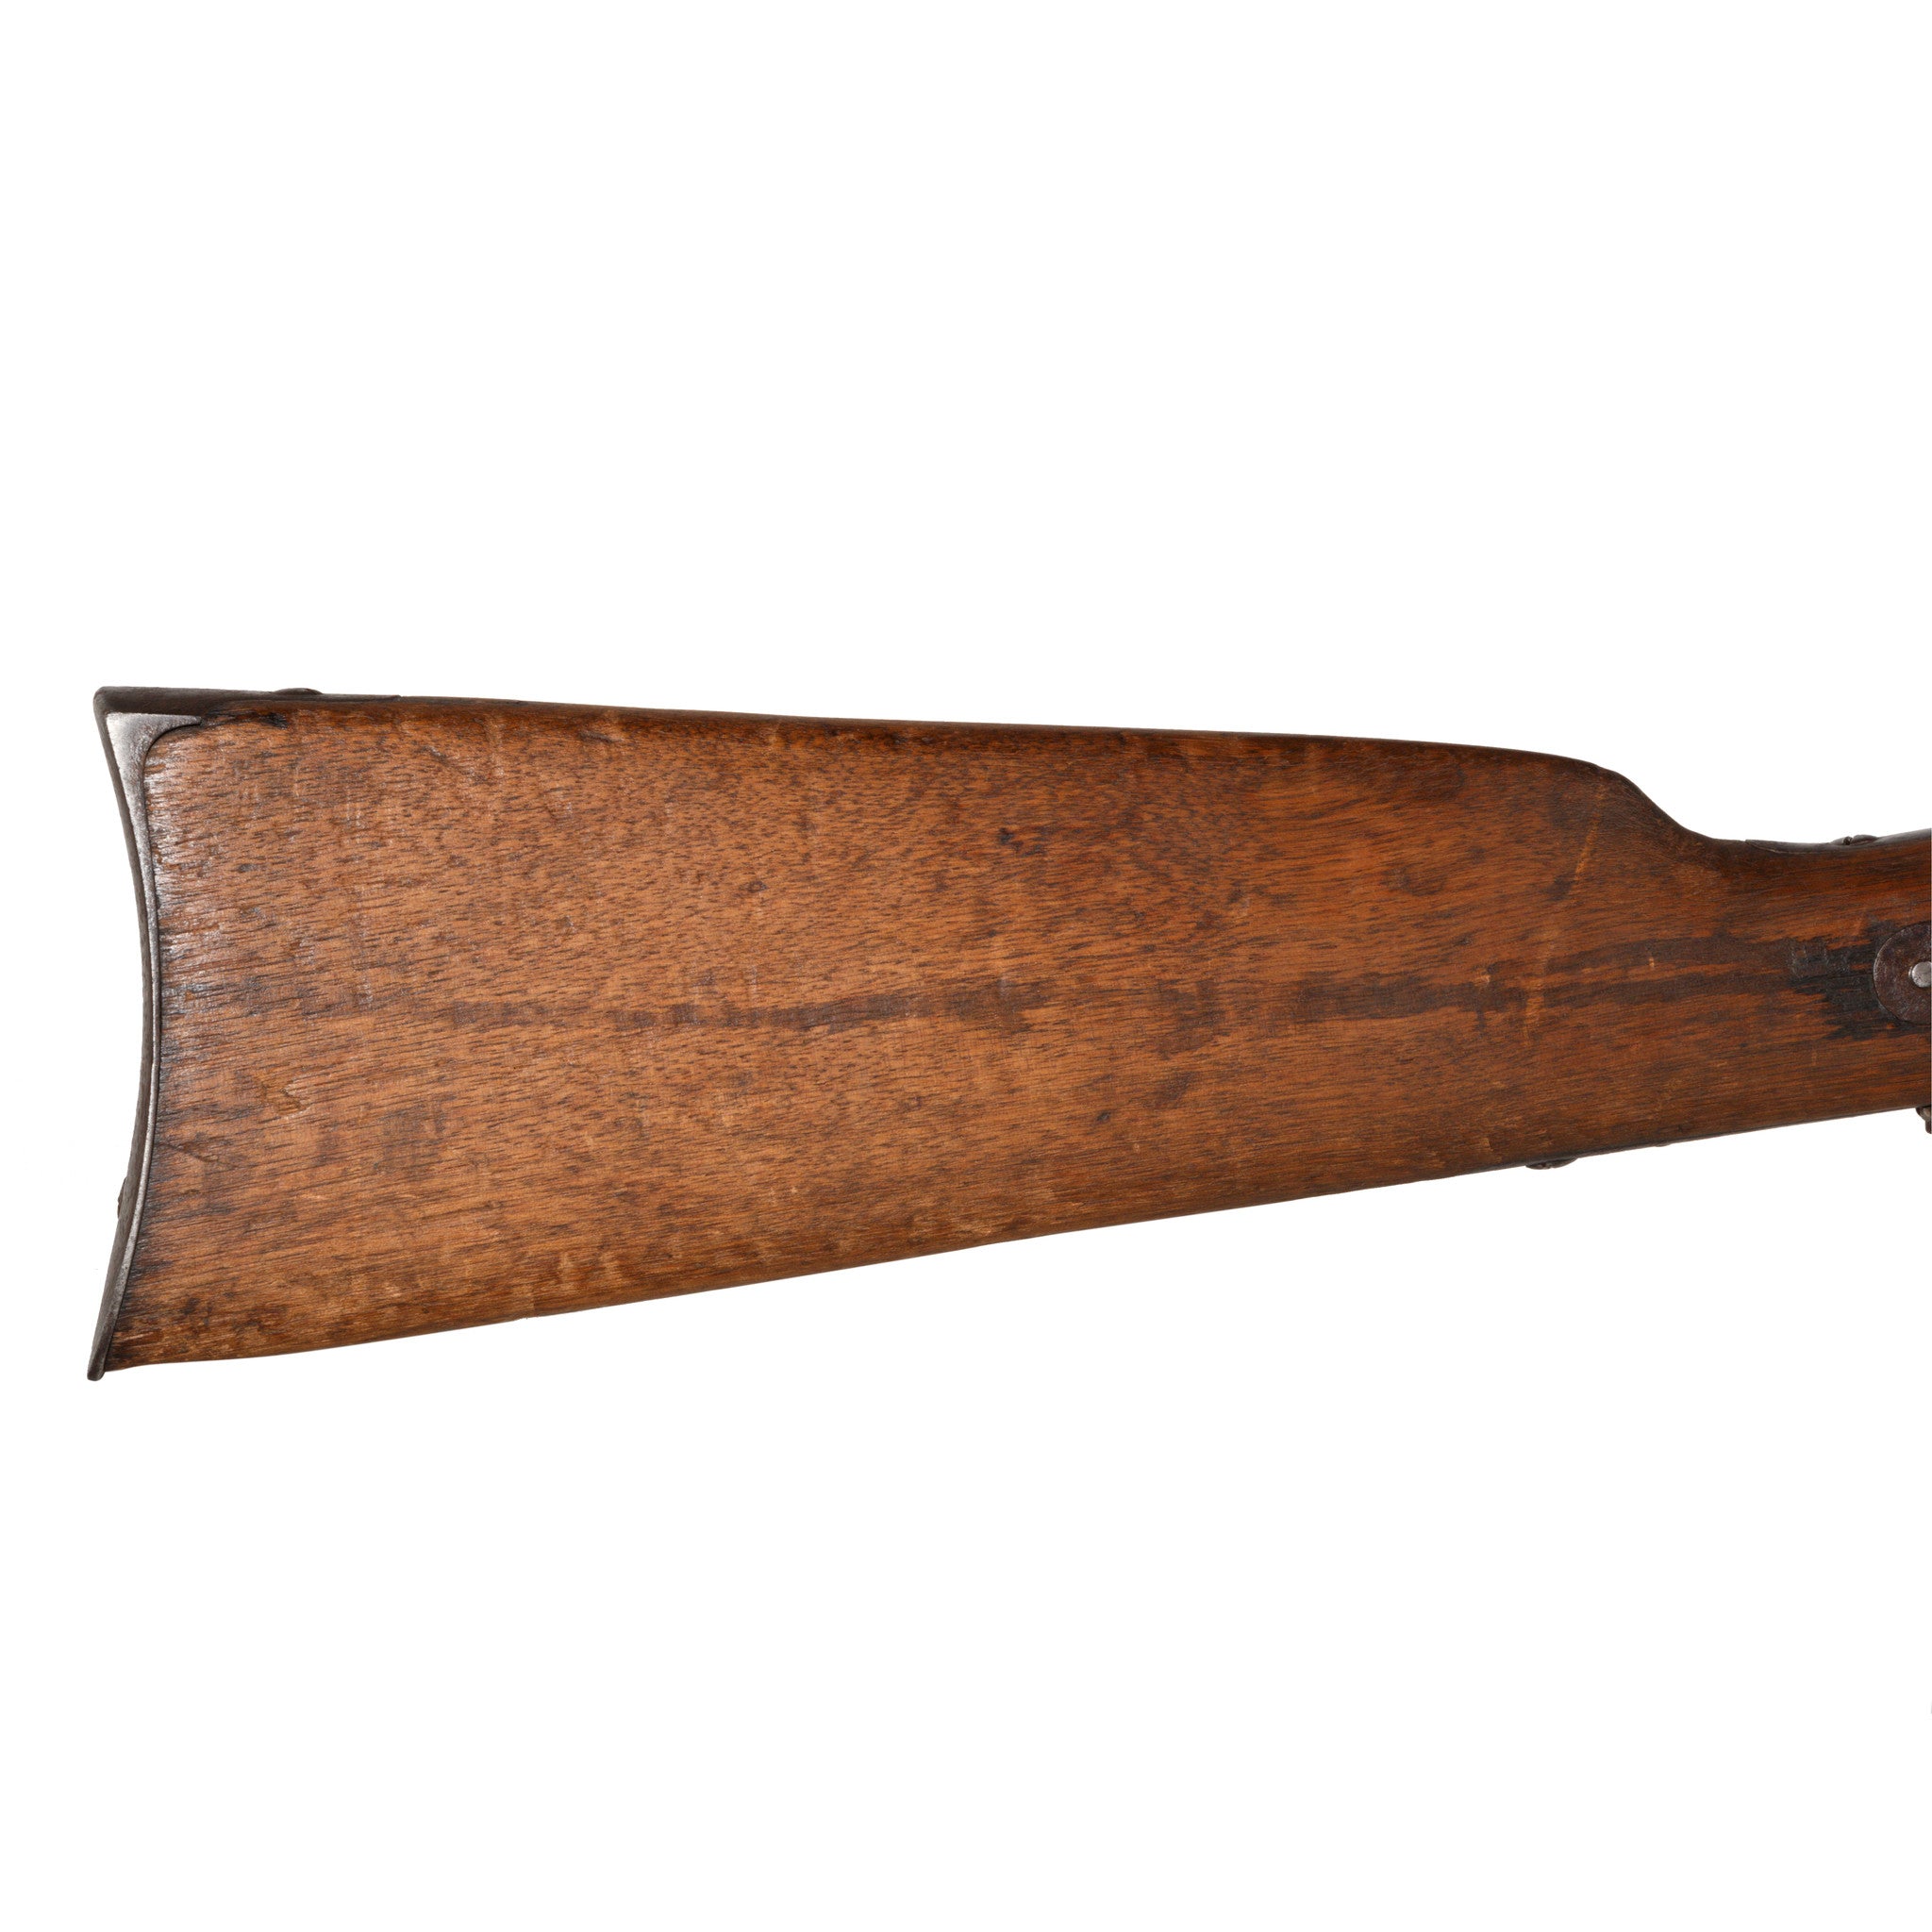 1863 Sharps Carbine